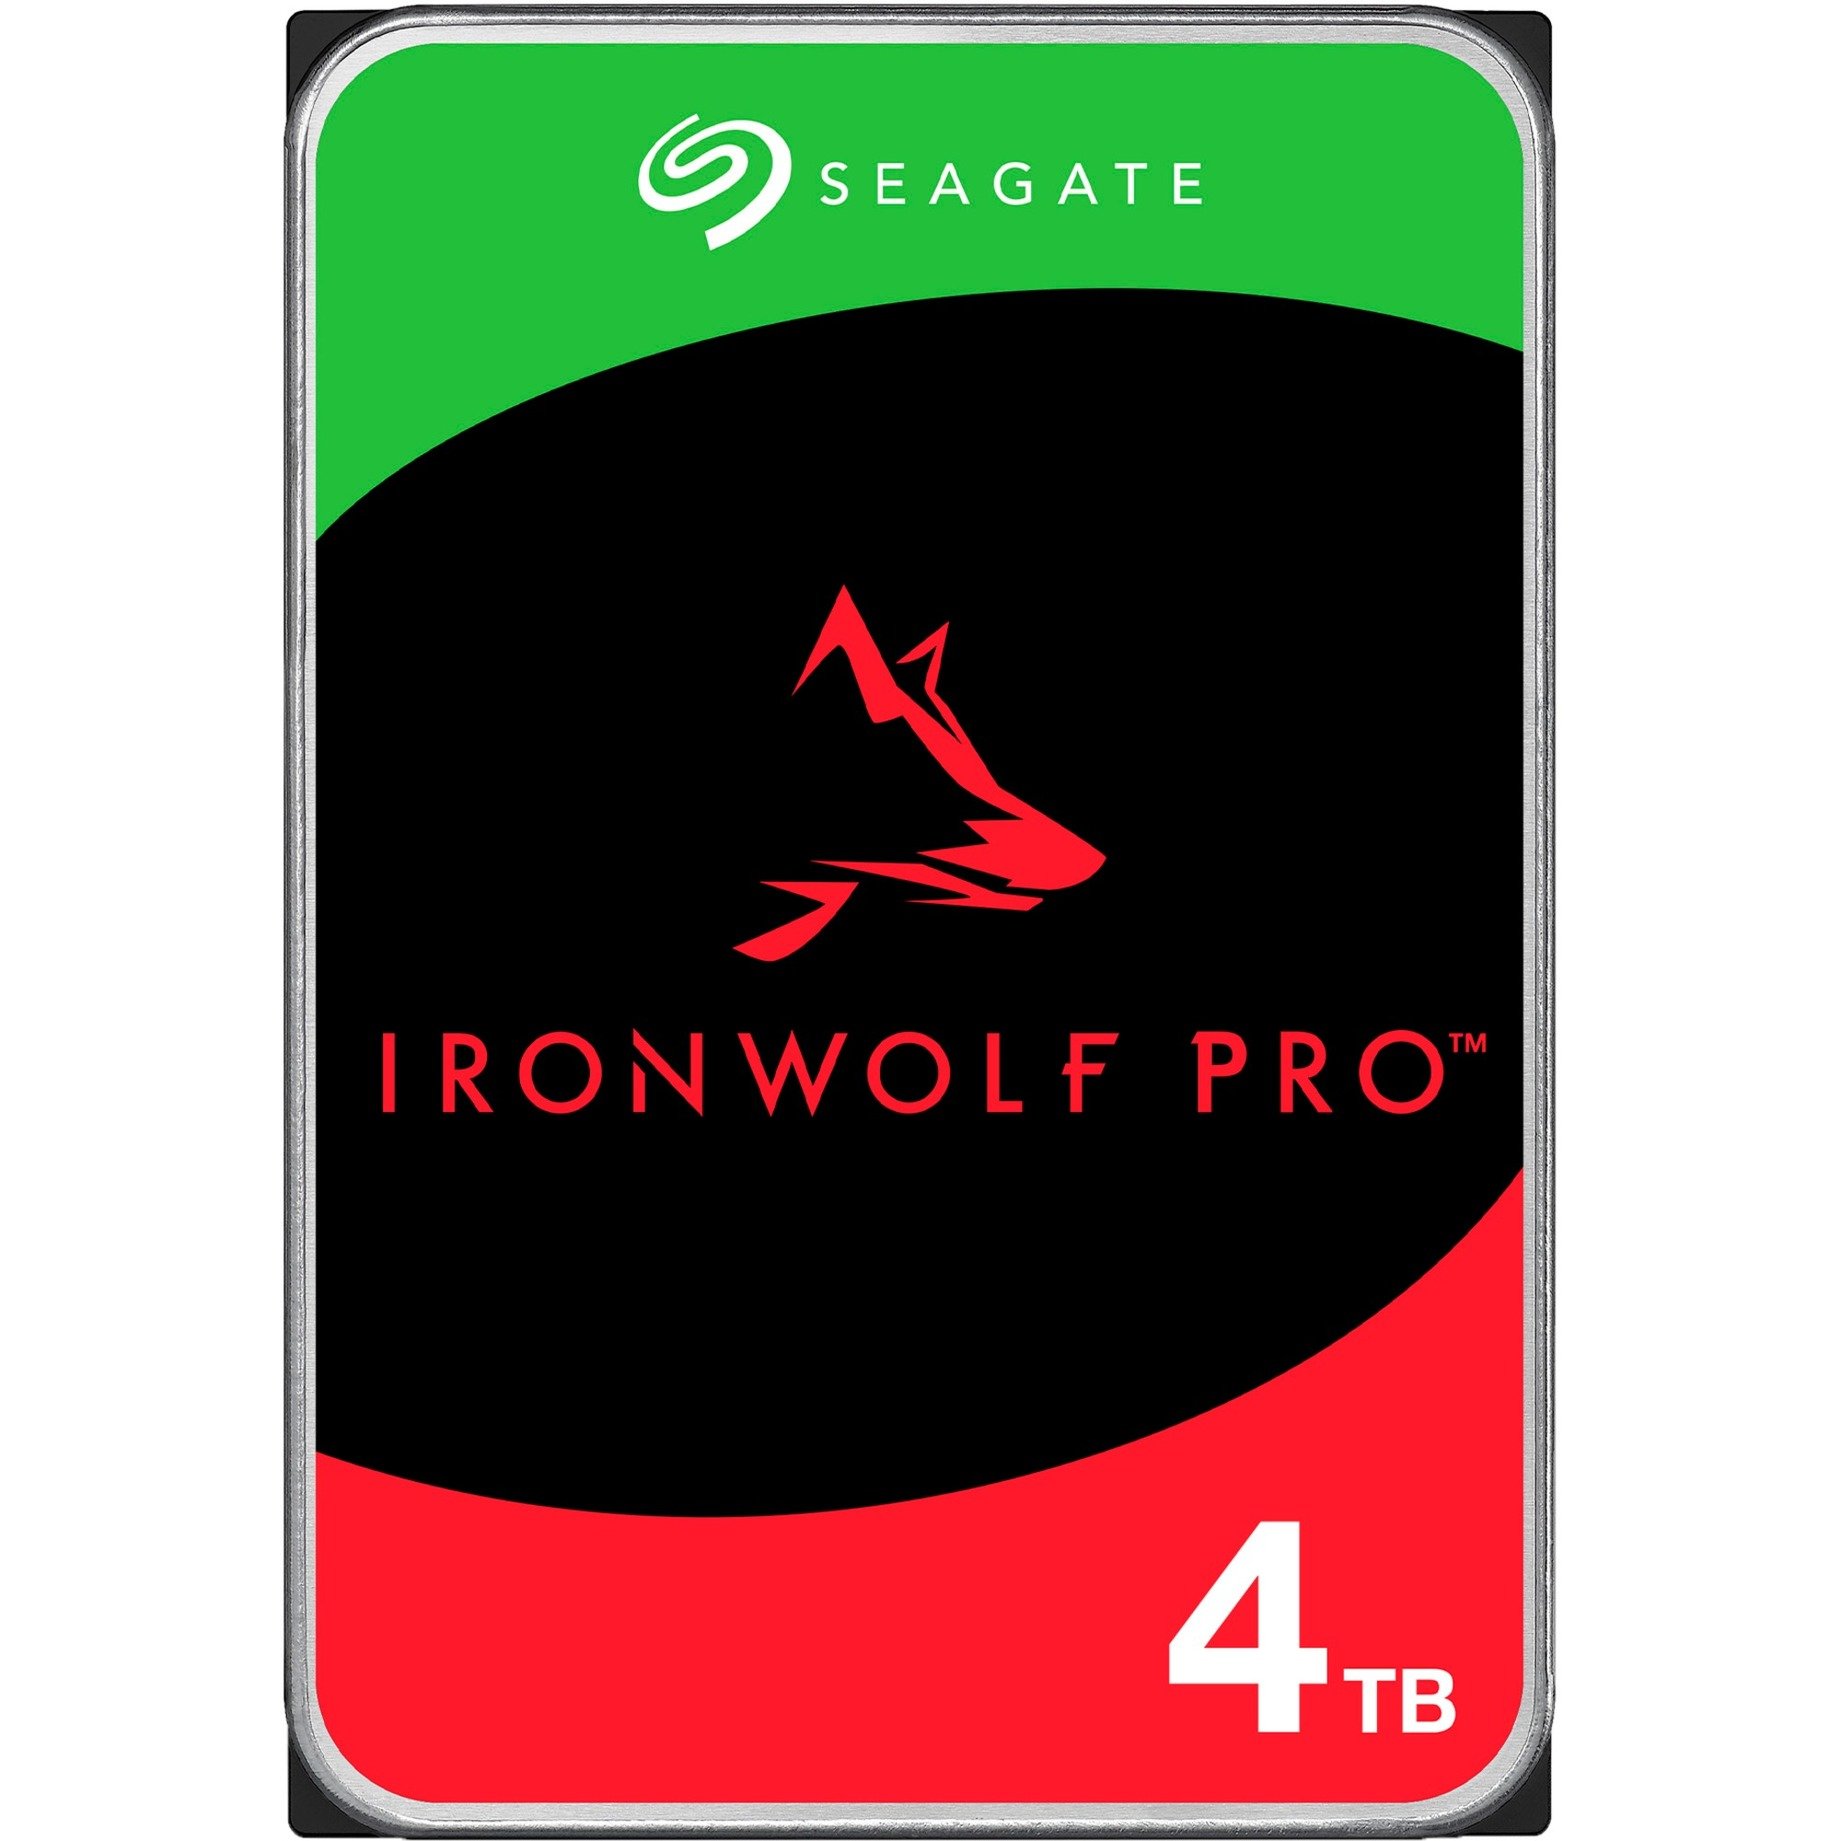 IronWolf Pro NAS 4 TB CMR, Festplatte von Seagate